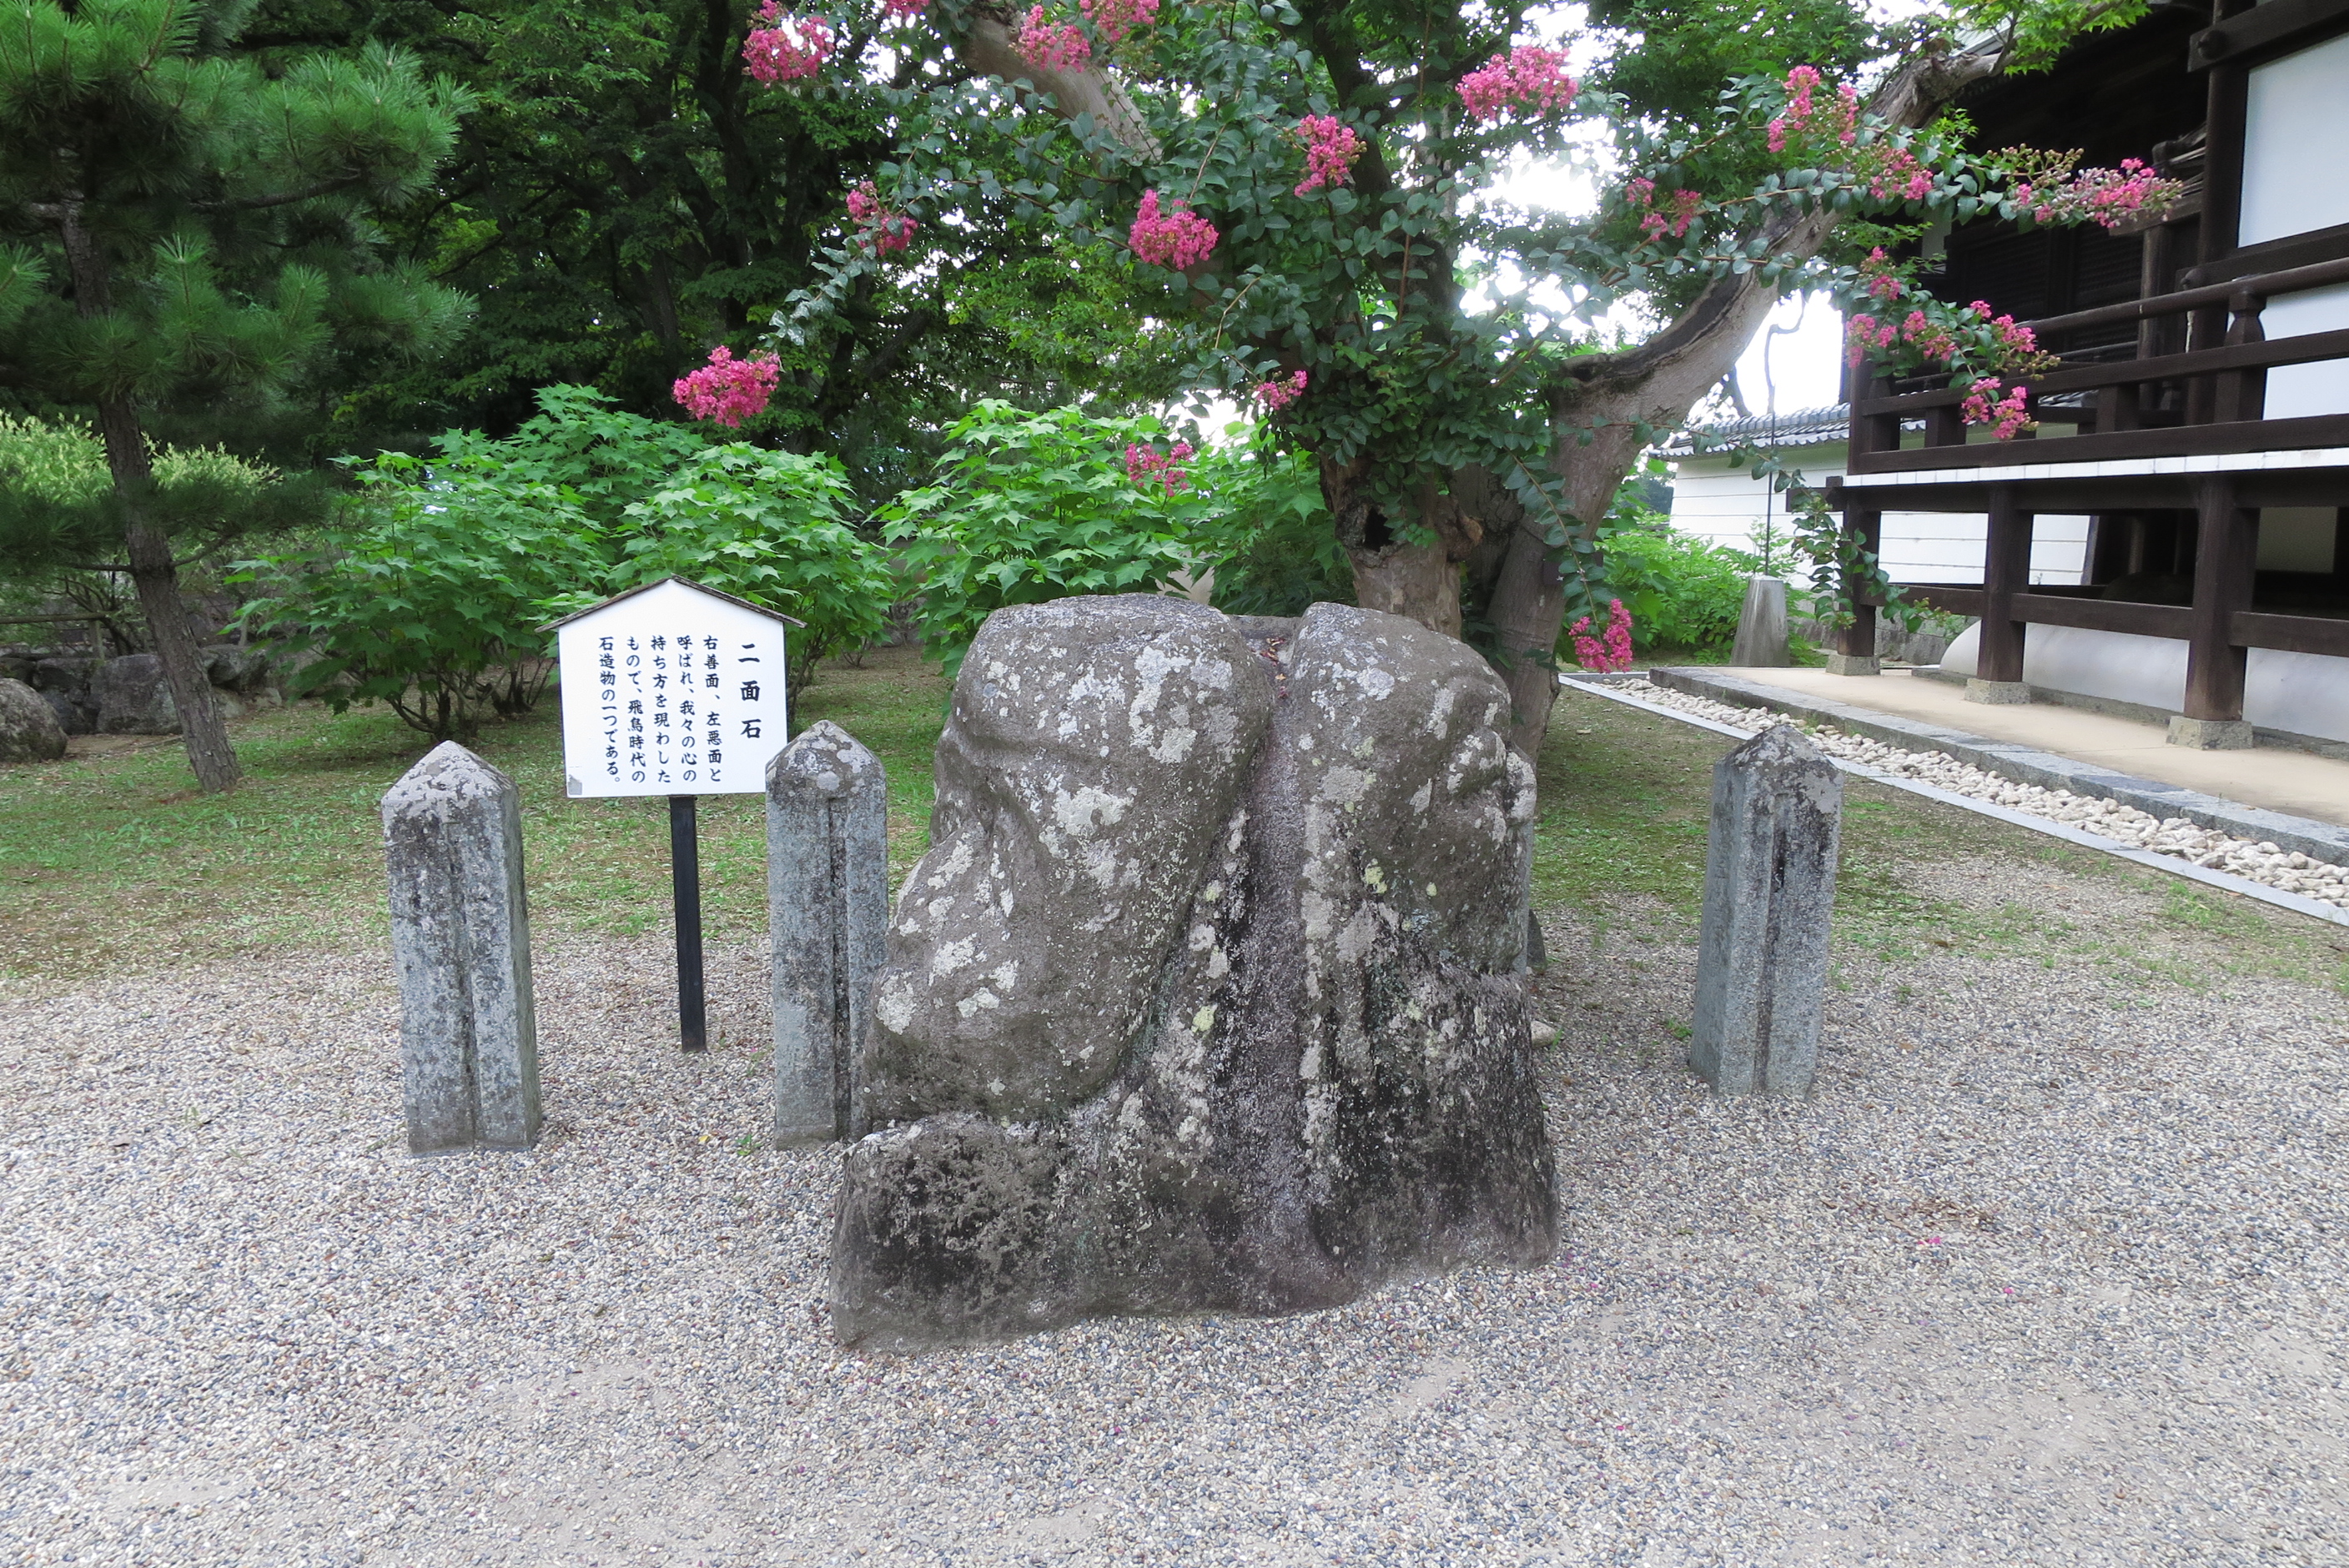 橘寺境内にある二面石。私たちの心の持ち方を表した「右善面、左悪面」の２つが彫られています。